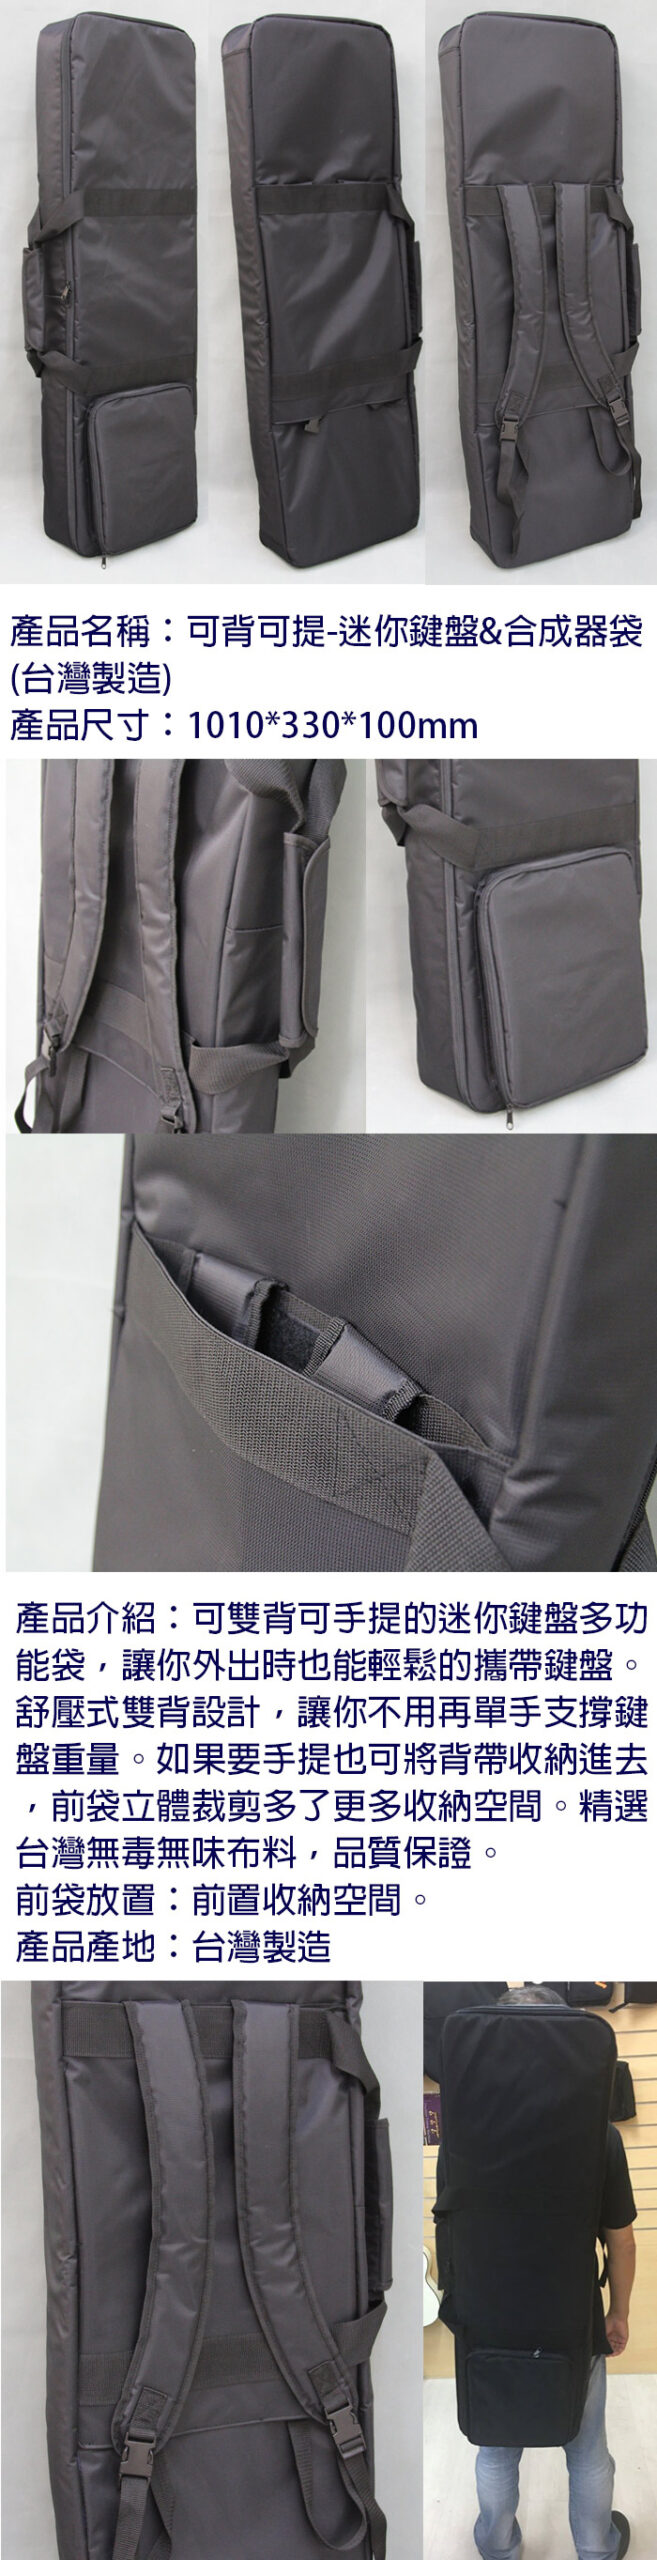 迷你鍵盤袋 合成器袋 可背可提 台灣製造